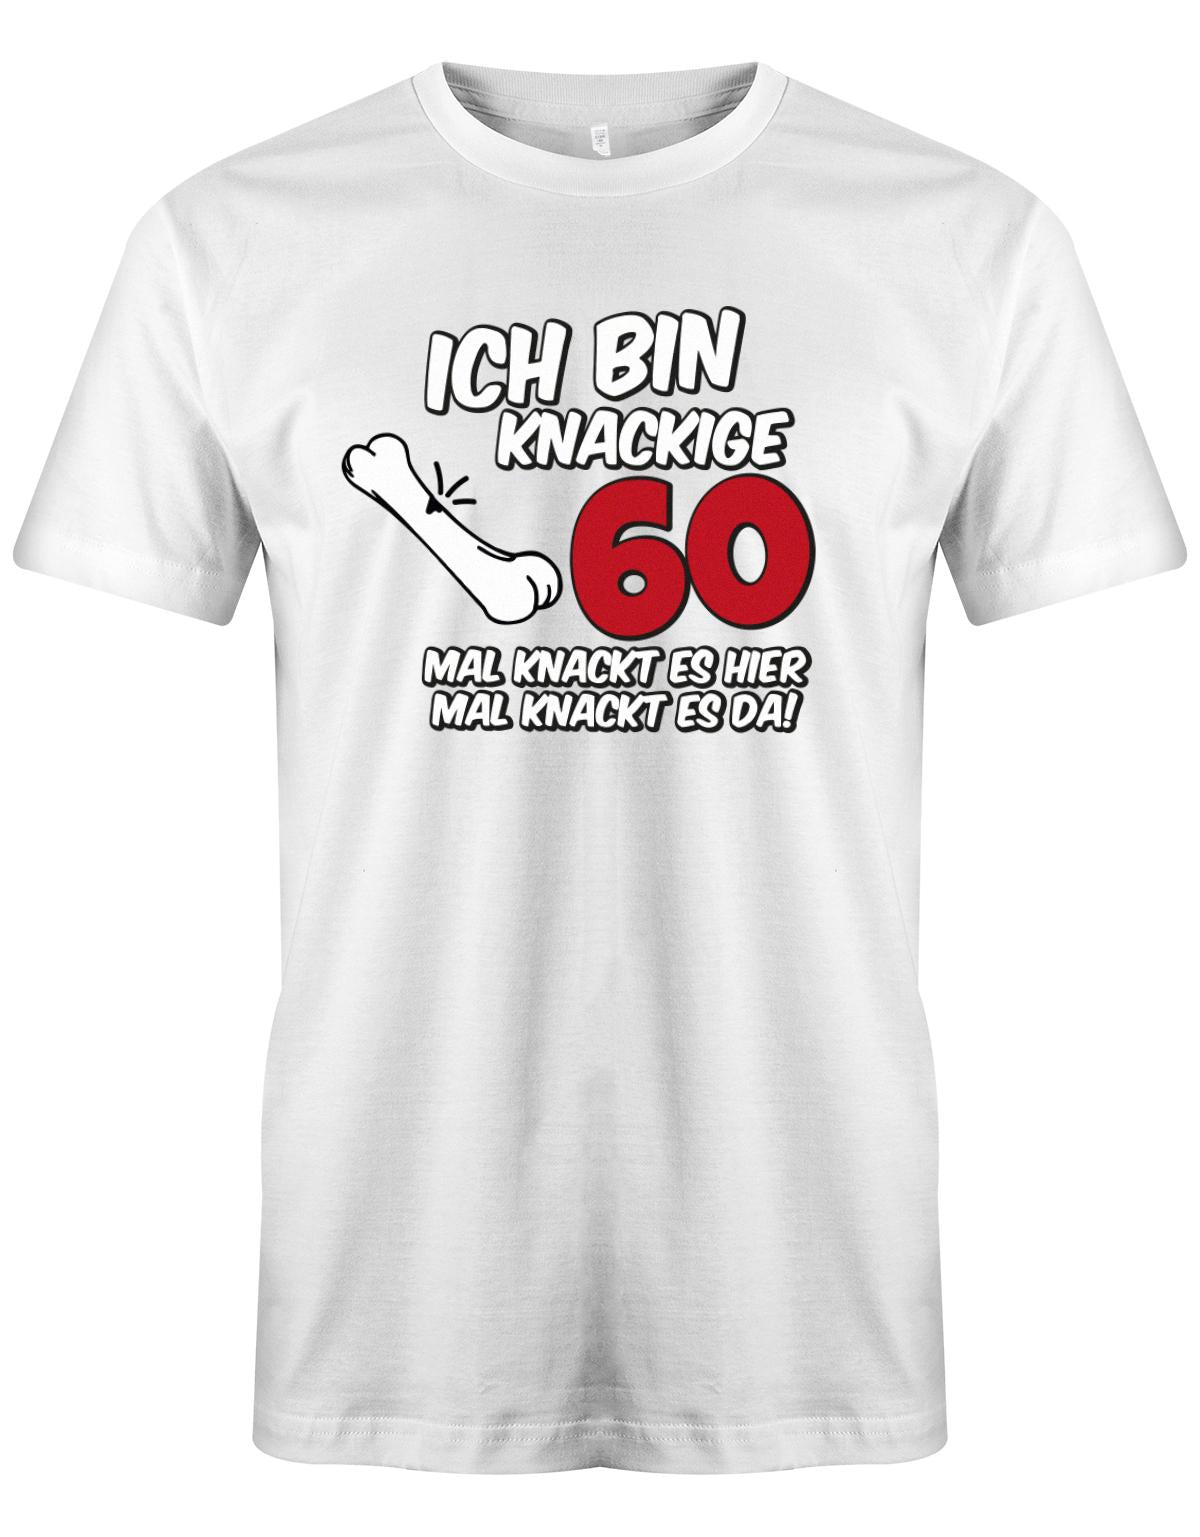 Lustiges T-Shirt zum 60. Geburtstag für den Mann Bedruckt mit Ich bin knackige 60 mal knackt es hier mal knackt es da! Weiss